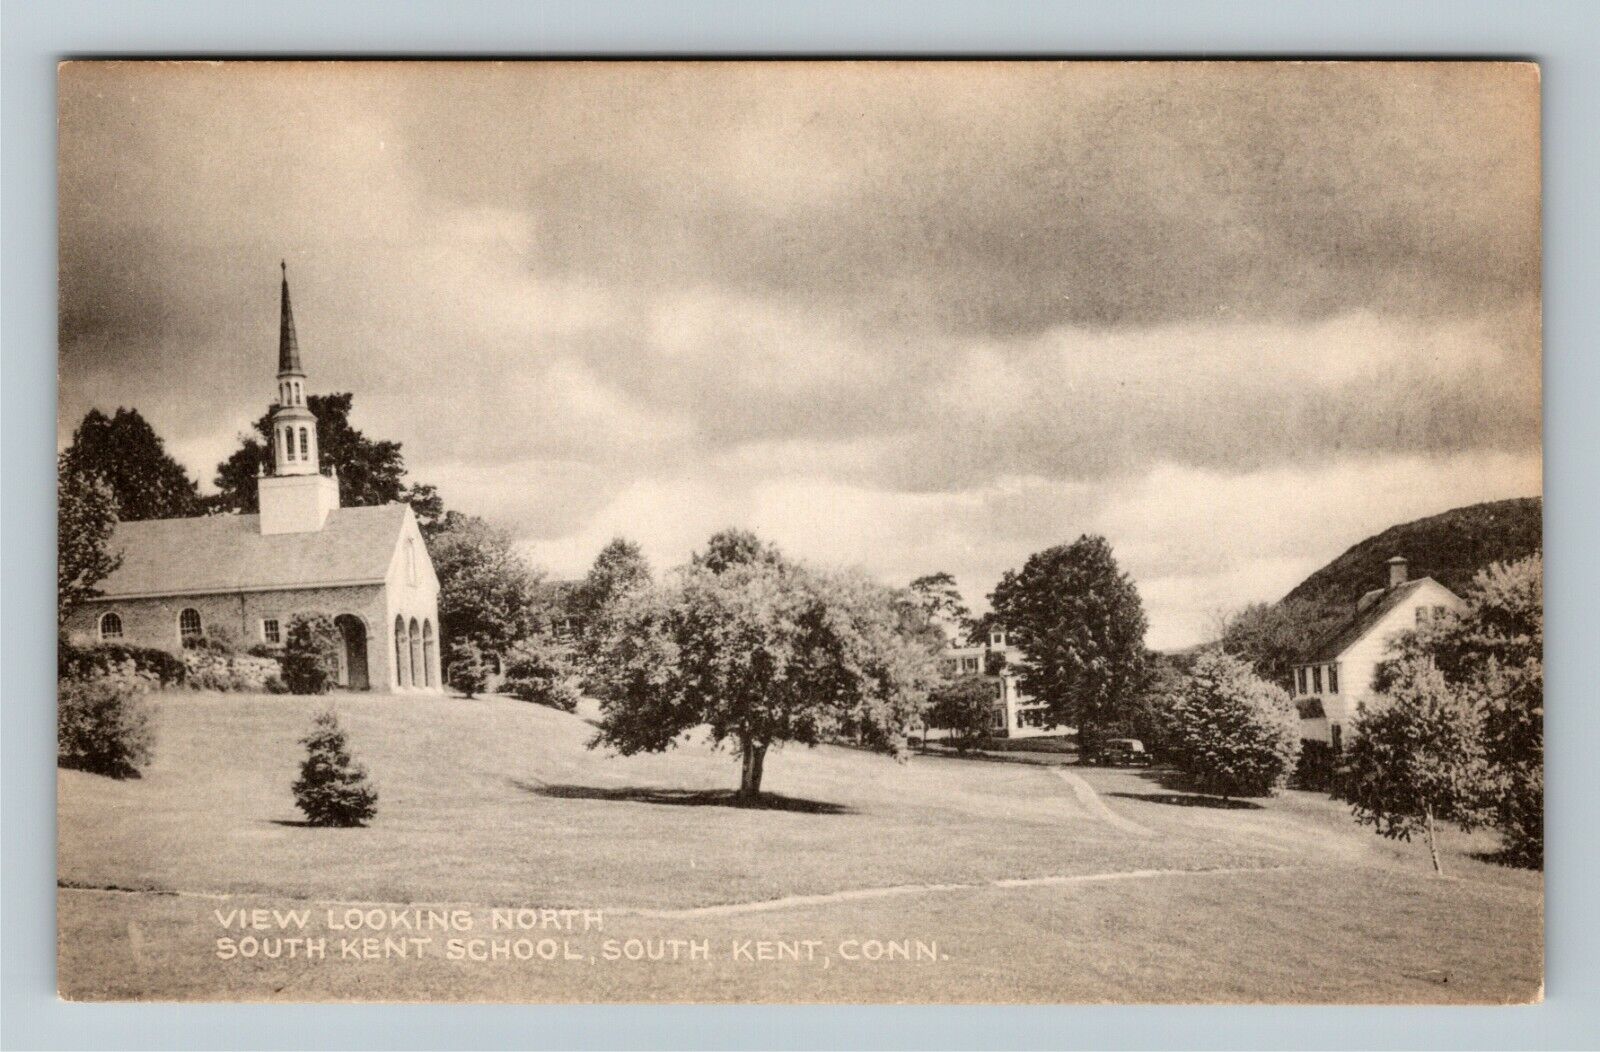 South Kent CT-Connecticut, South Kent School Vintage Souvenir Postcard